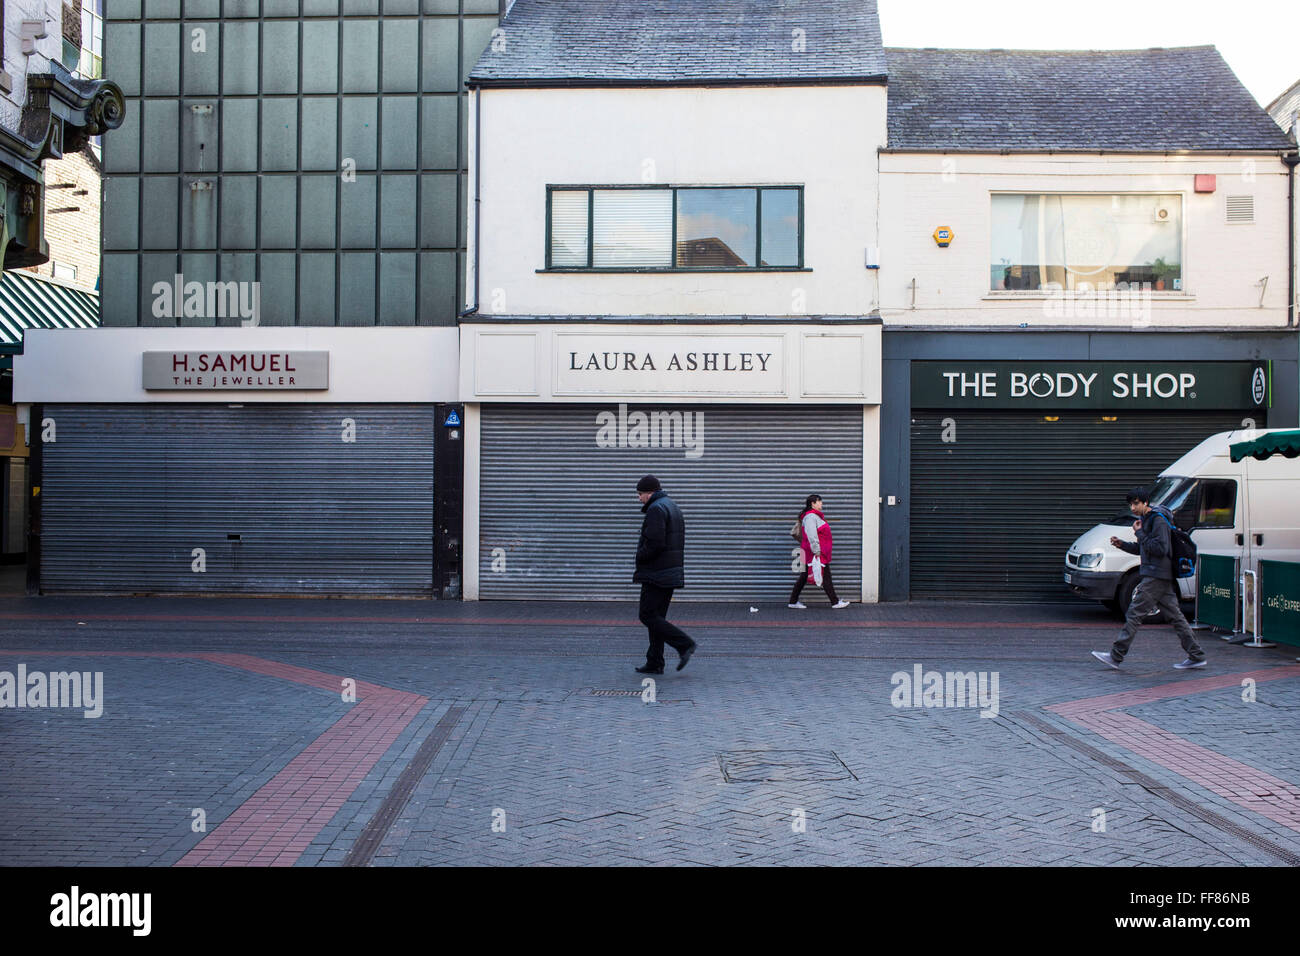 Eine Reihe von berühmten britischen High Street Geschäfte, The Body Shop, Laura Ashley und H Samuel in Middlesborough Stadtzentrum, North Yorkshire, Vereinigtes Königreich.  Alle Geschäfte sind mit den Fensterläden unten geschlossen. Stockfoto